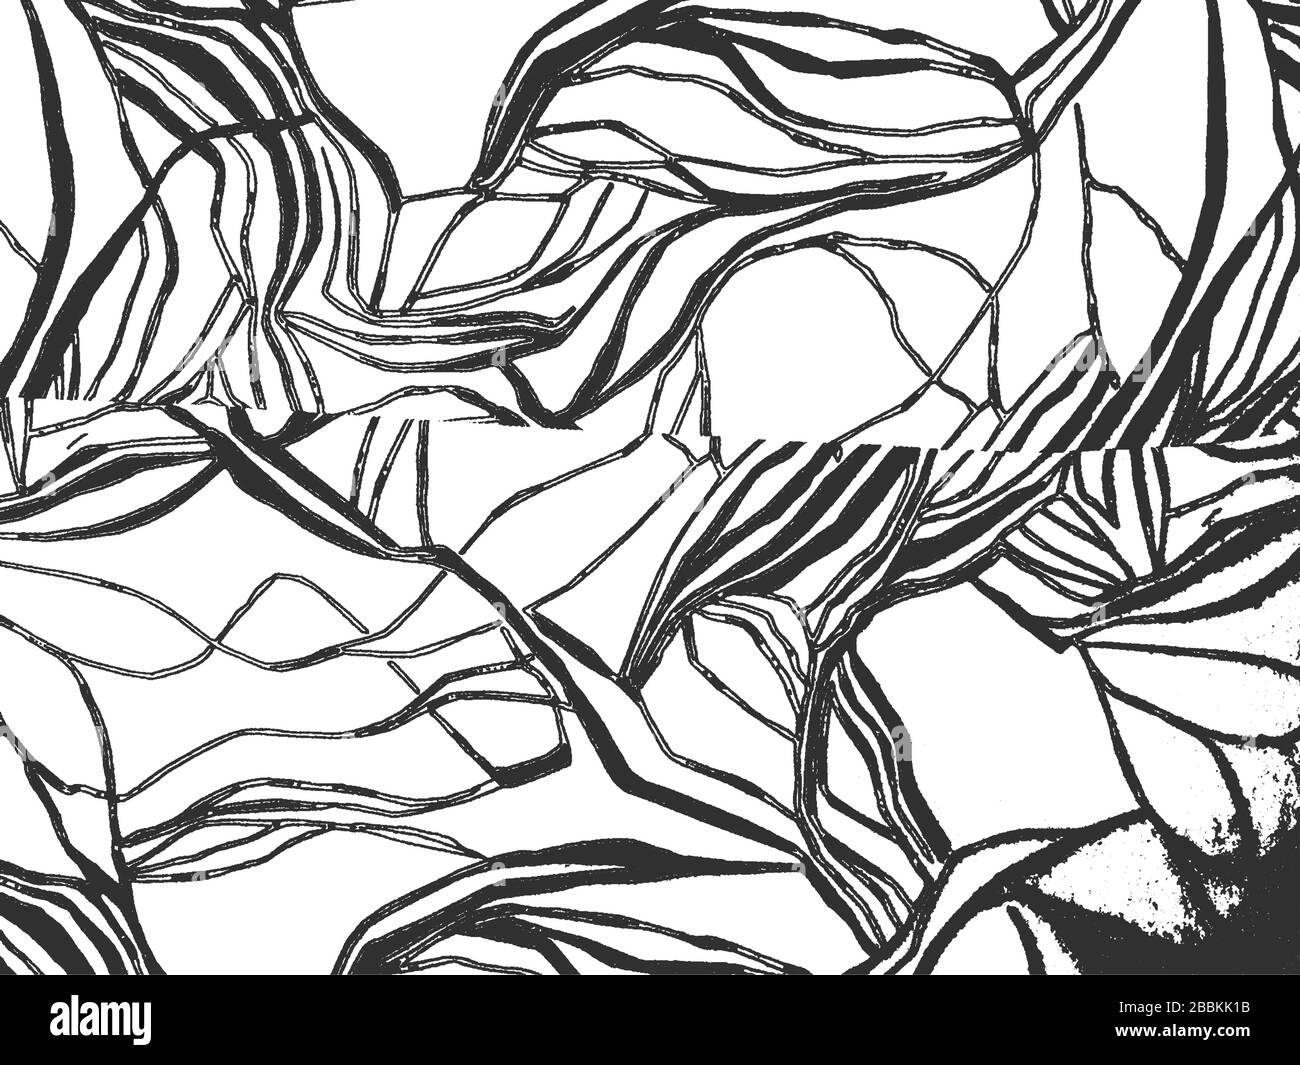 Bedrängnis Grunge Vektor-Textur des Gewebes mit Zebraornament. Schwarz-Weiß-Hintergrund. EPS 8-Abbildung Stock Vektor